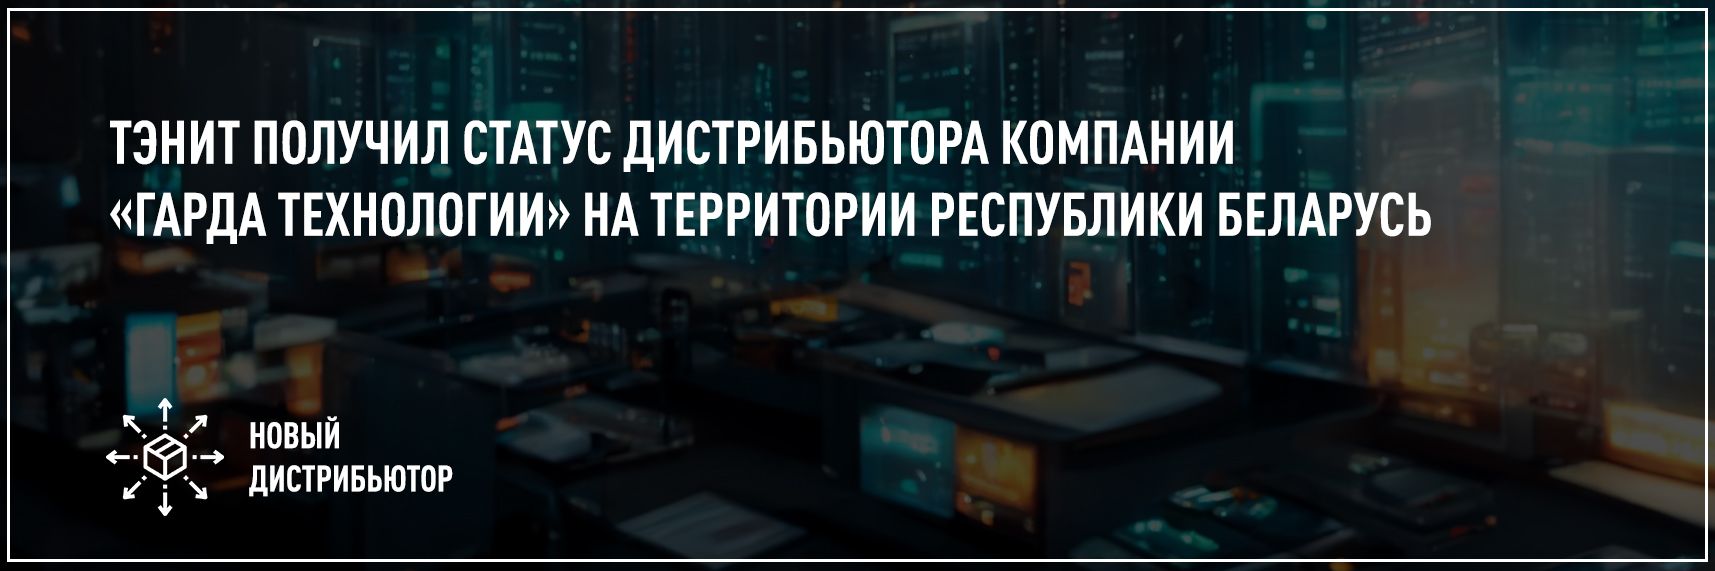 Тэнит получил статус дистрибьютора компании«Гарда Технологии» на территории Республики Беларусь